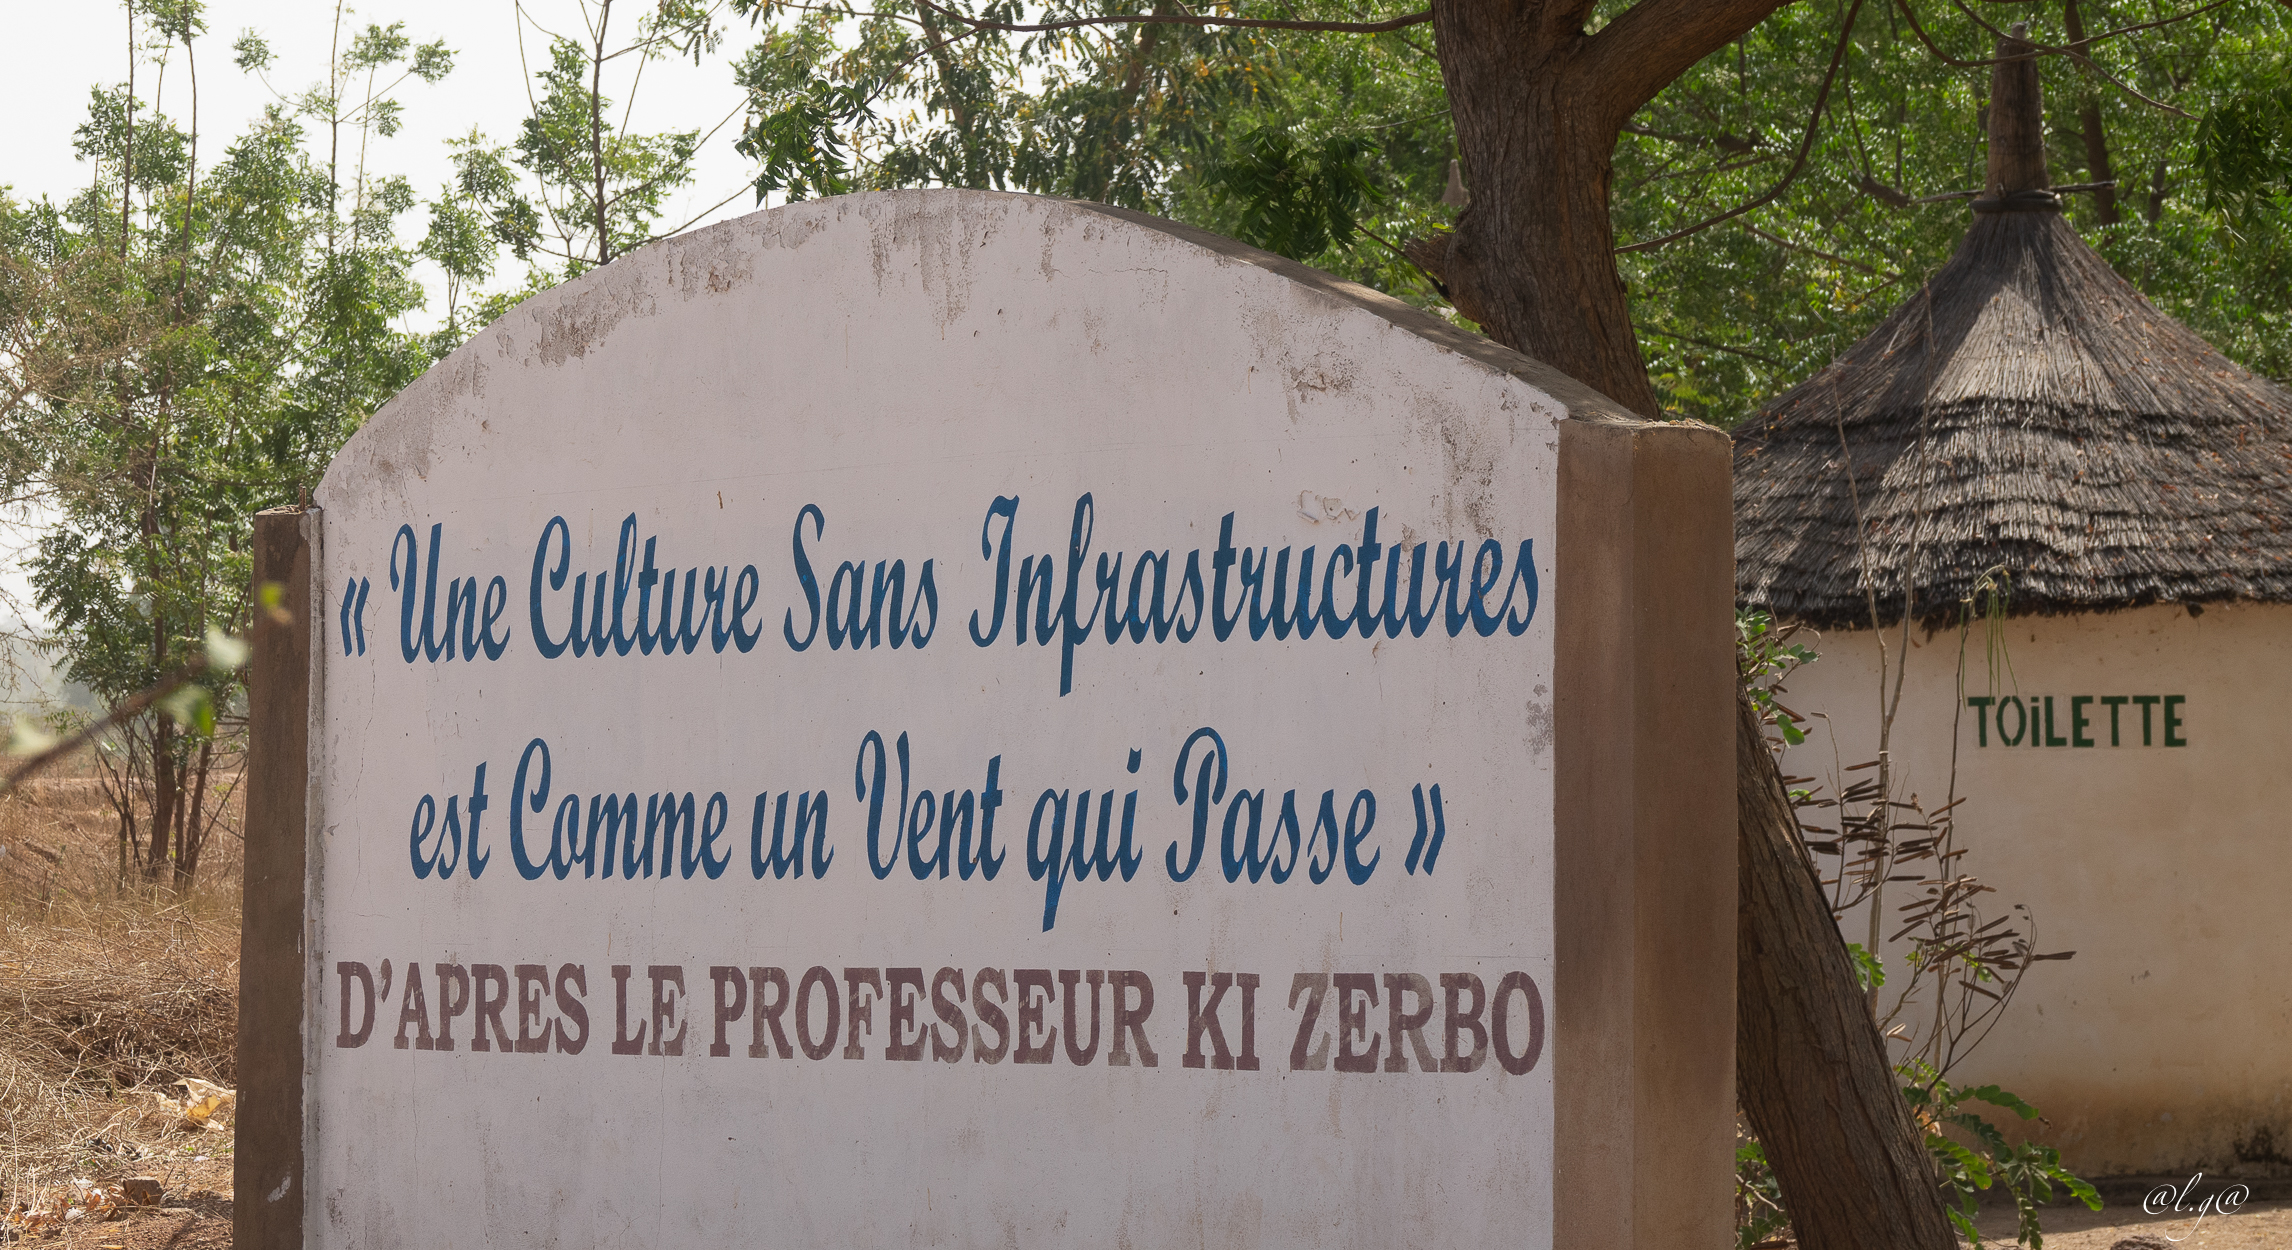 Sur la route ... entre Ouagadougou et Sabou